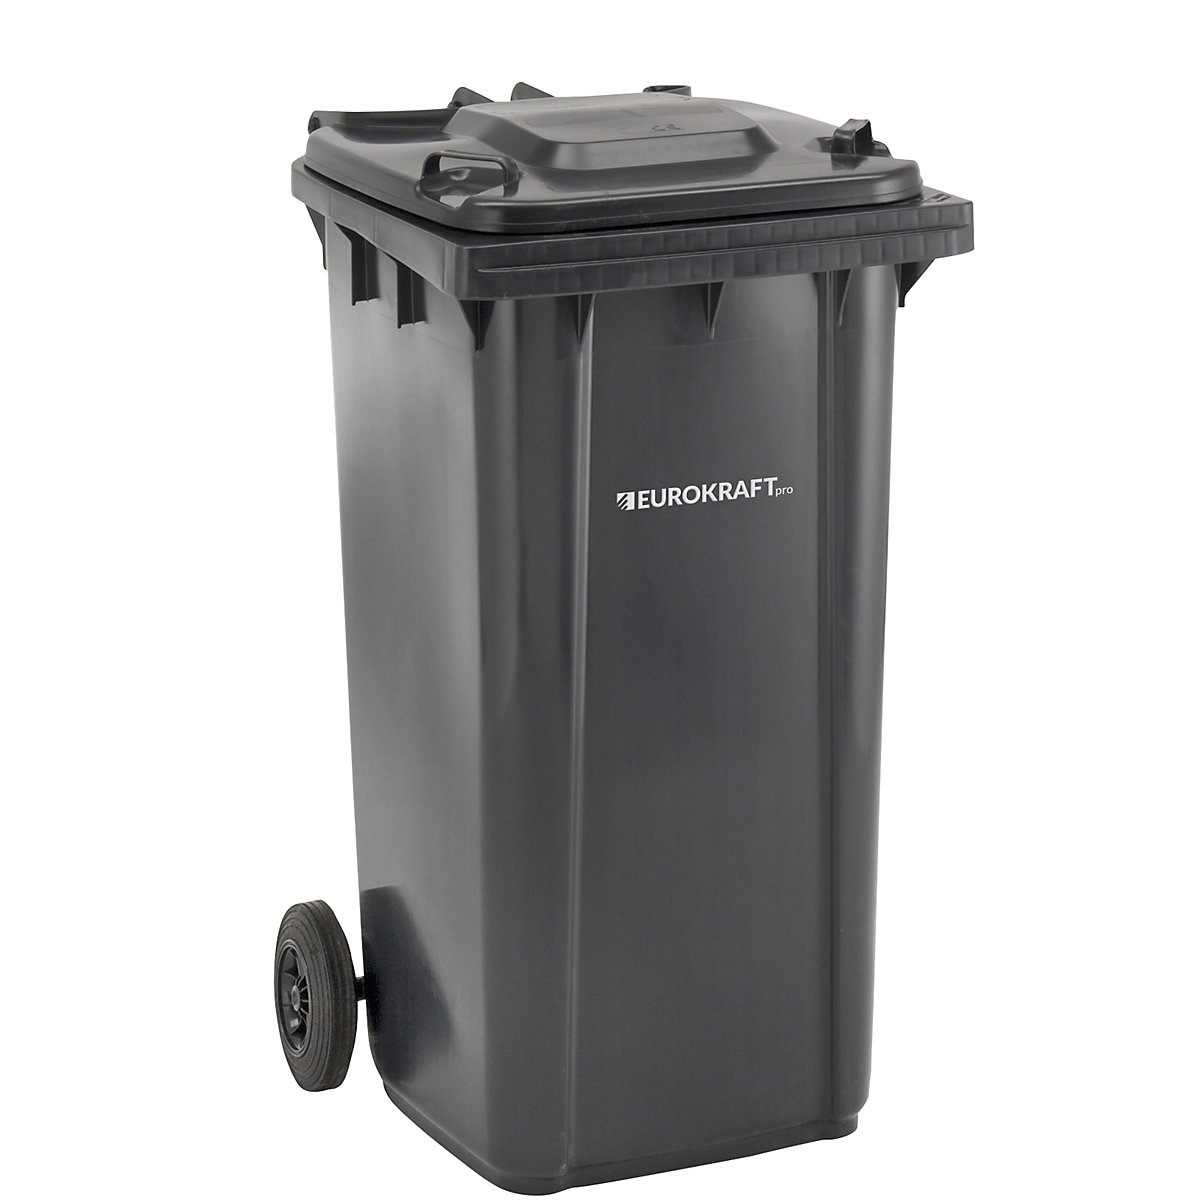 EUROKRAFTpro Mülltonne aus Kunststoff, DIN EN 840, Volumen 240 l, BxHxT 580 x 1100 x 740 mm, anthrazit